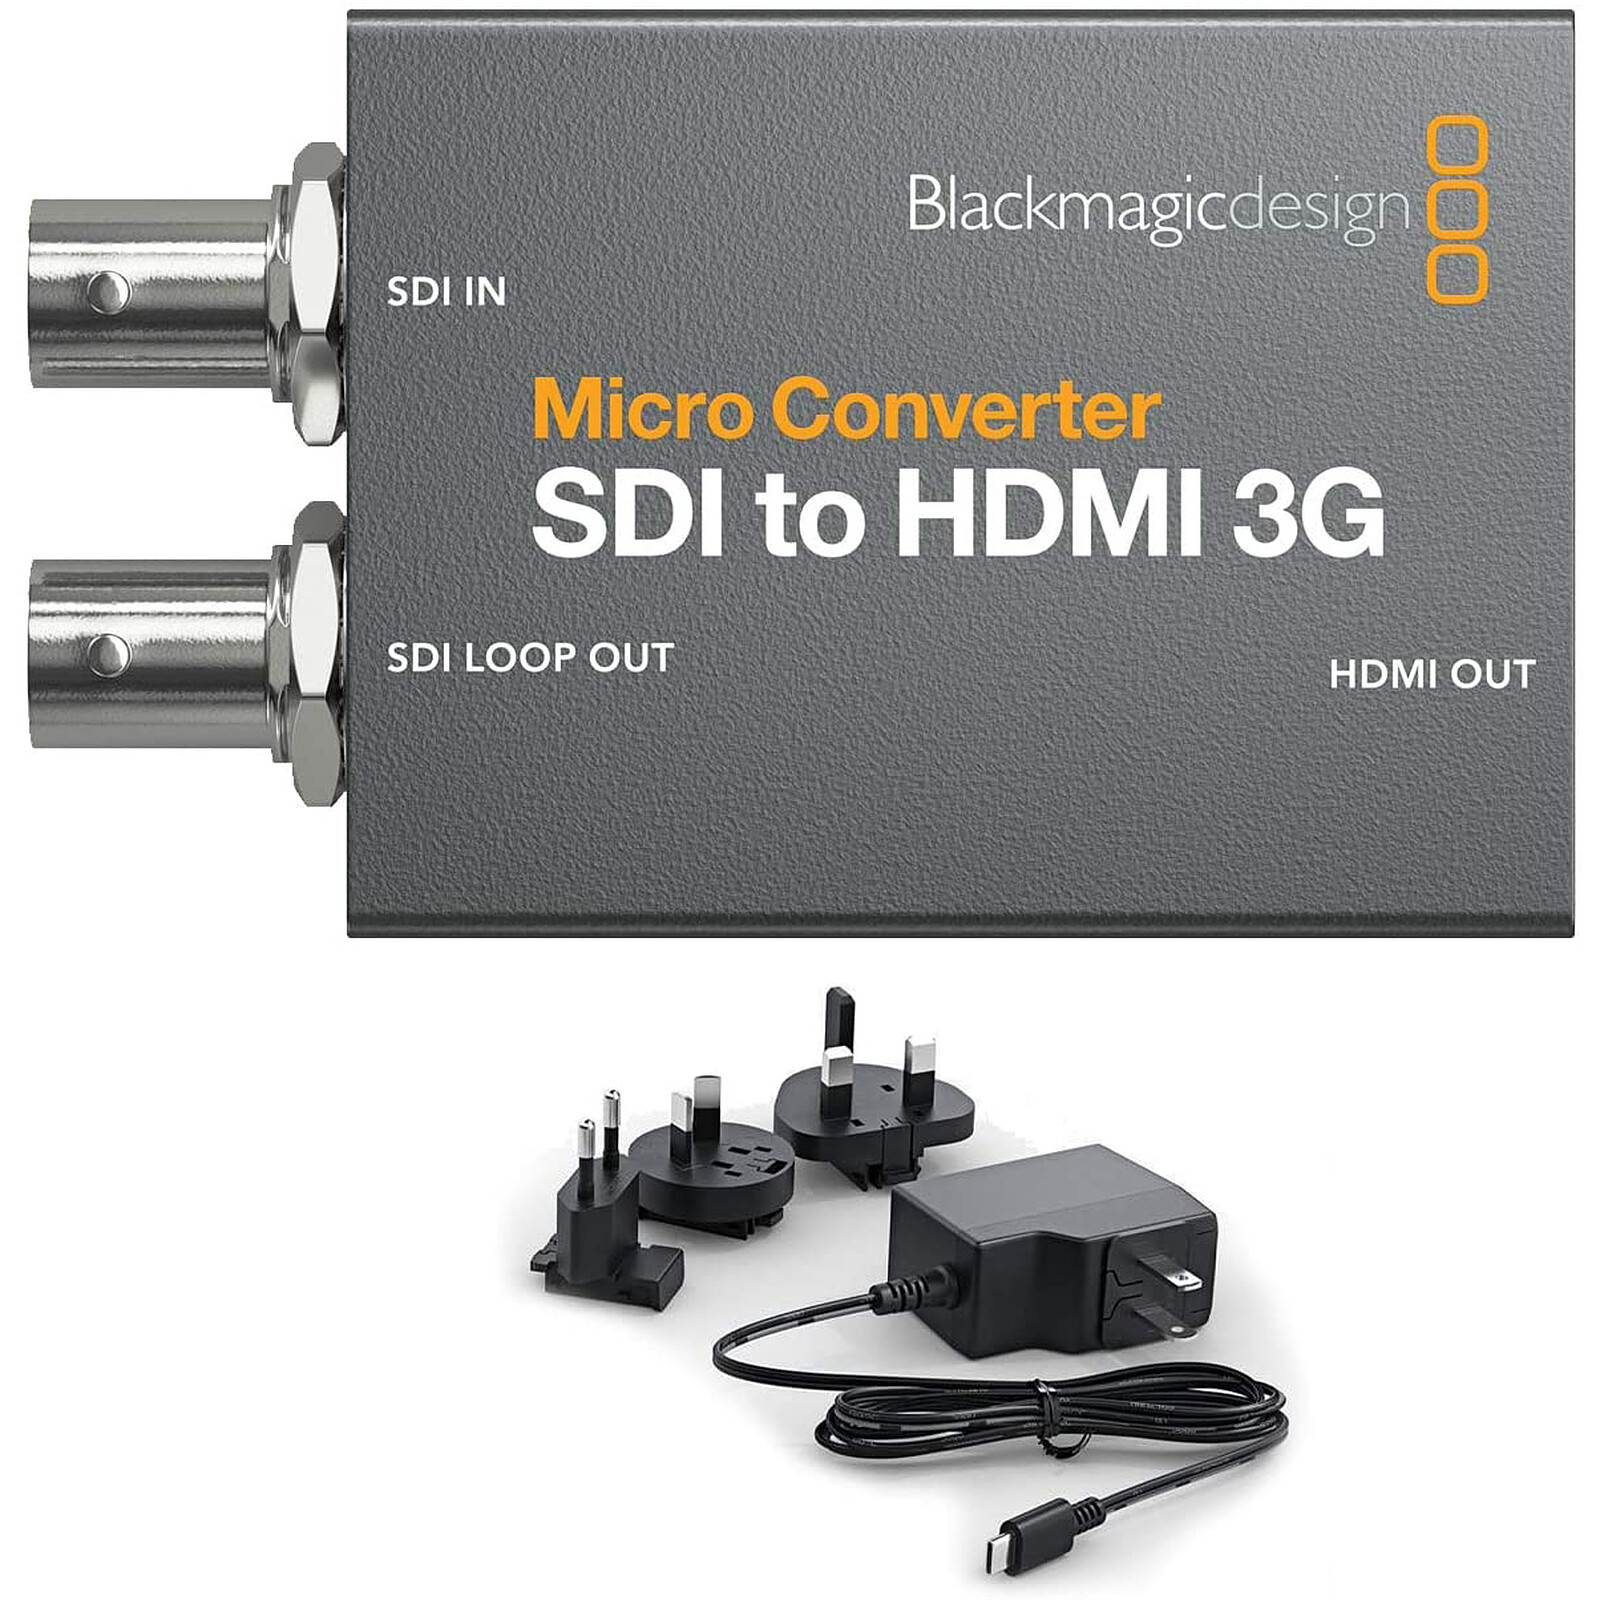 福袋特集 BlackmagicDesign Micro Converter SDI to HDMI 3G パワーサプライなし 